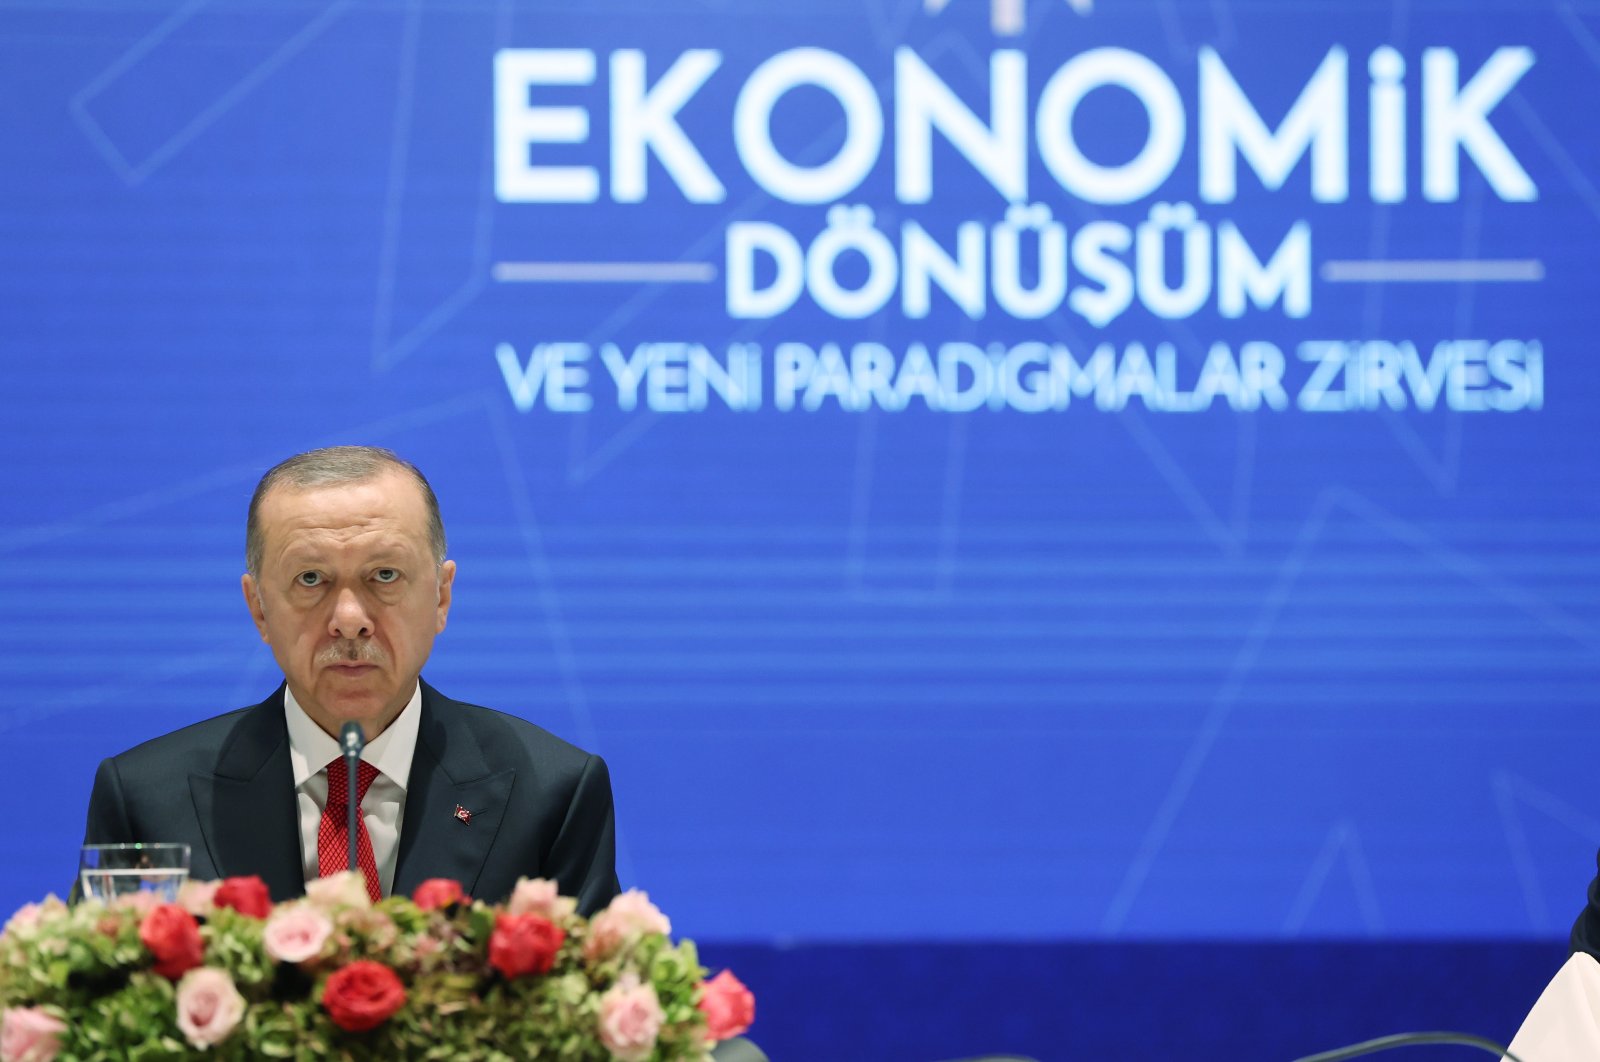 Türkiye ‘menggagalkan’ jebakan keuangan melalui tindakannya sendiri: Erdogan